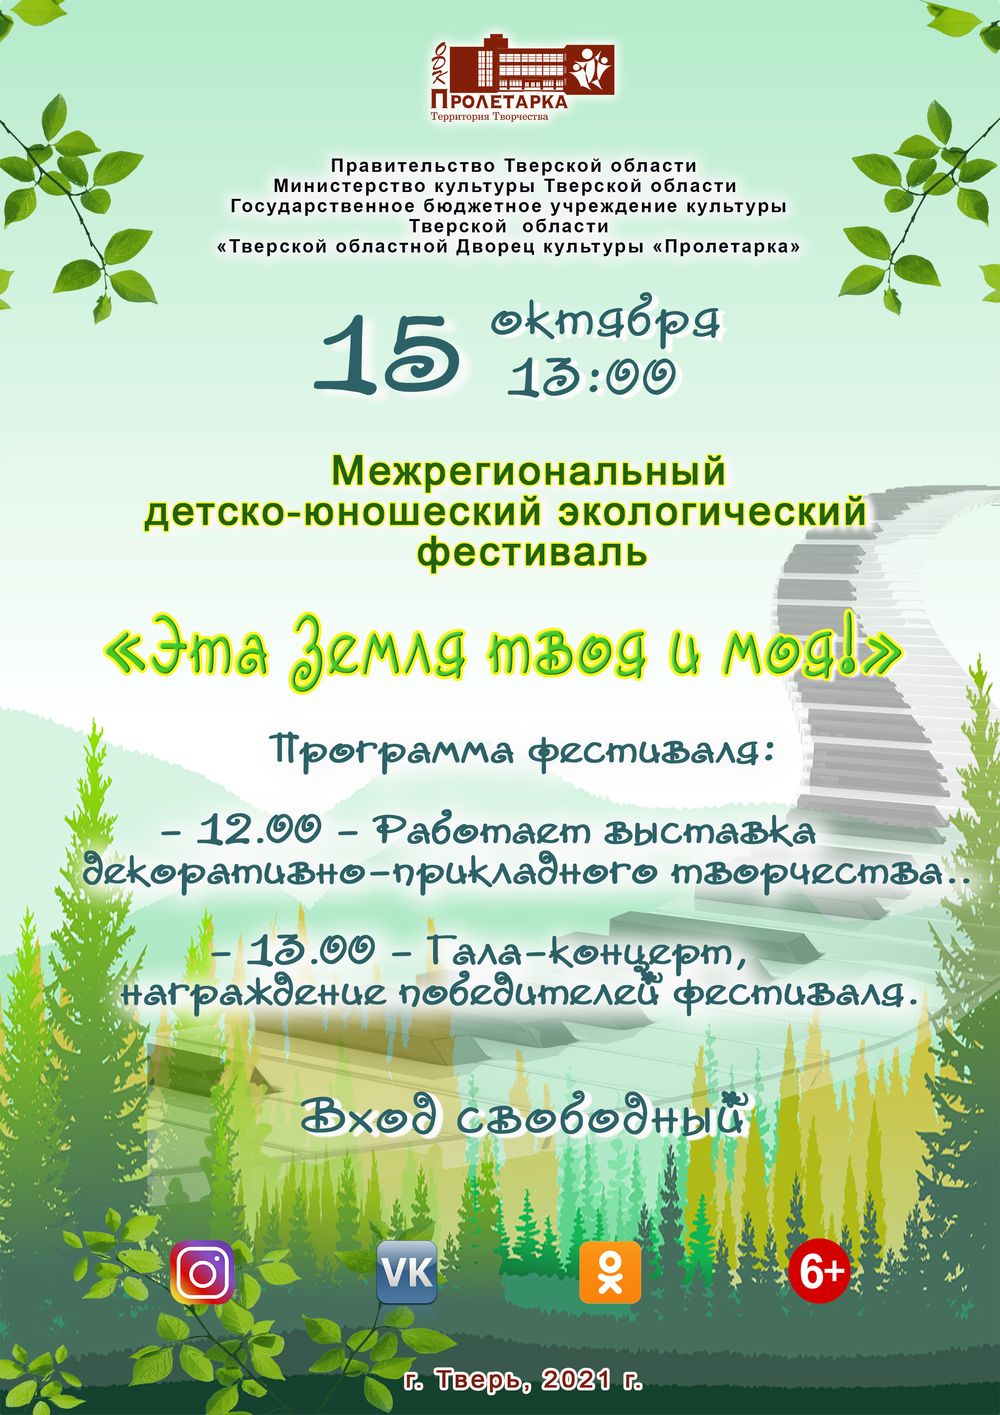 ДК «Пролетарка» приглашает на экологический фестиваль «Эта земля твоя и моя»